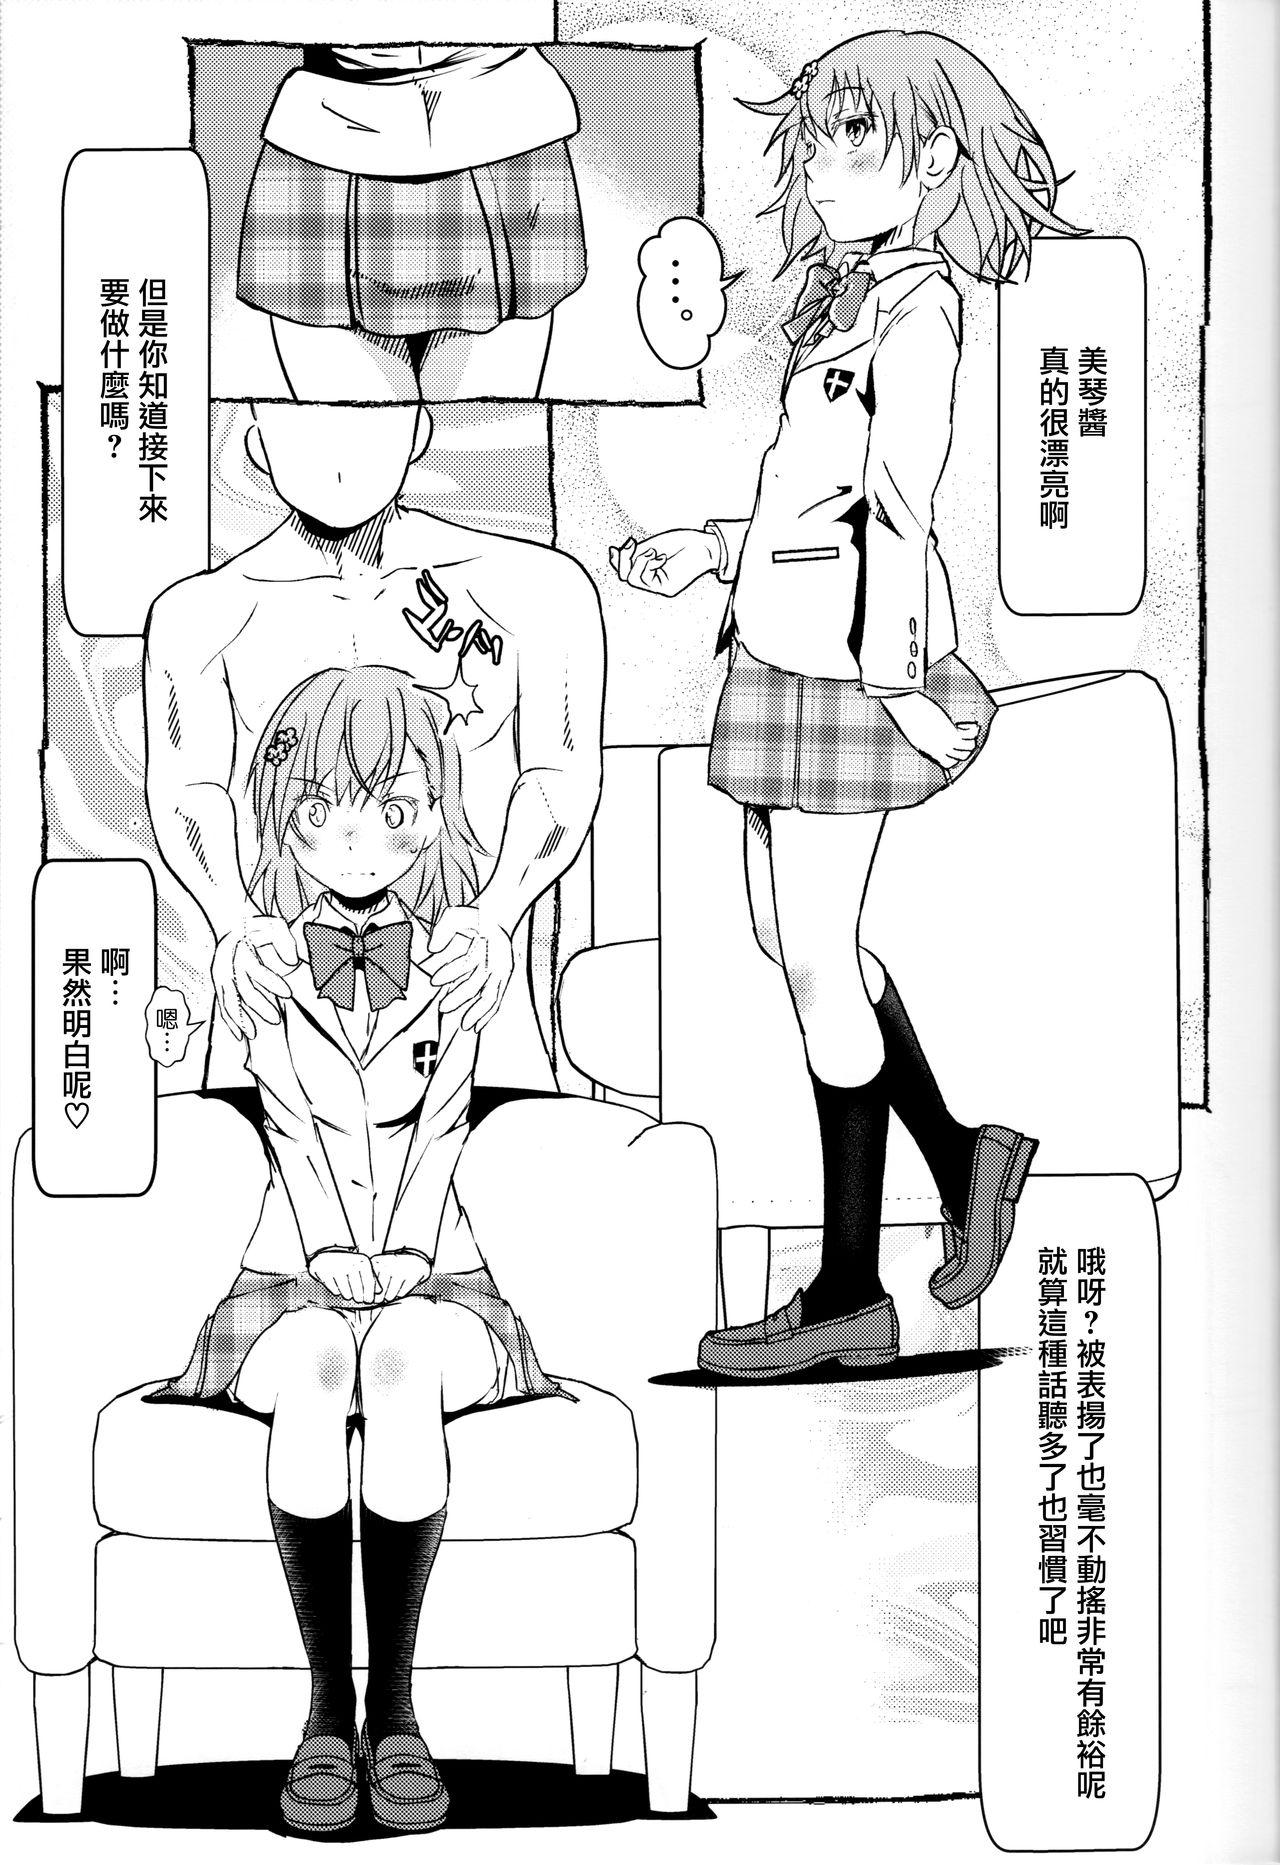 De Quatro Electric Girlland 1.0 - Toaru kagaku no railgun Soft - Page 4